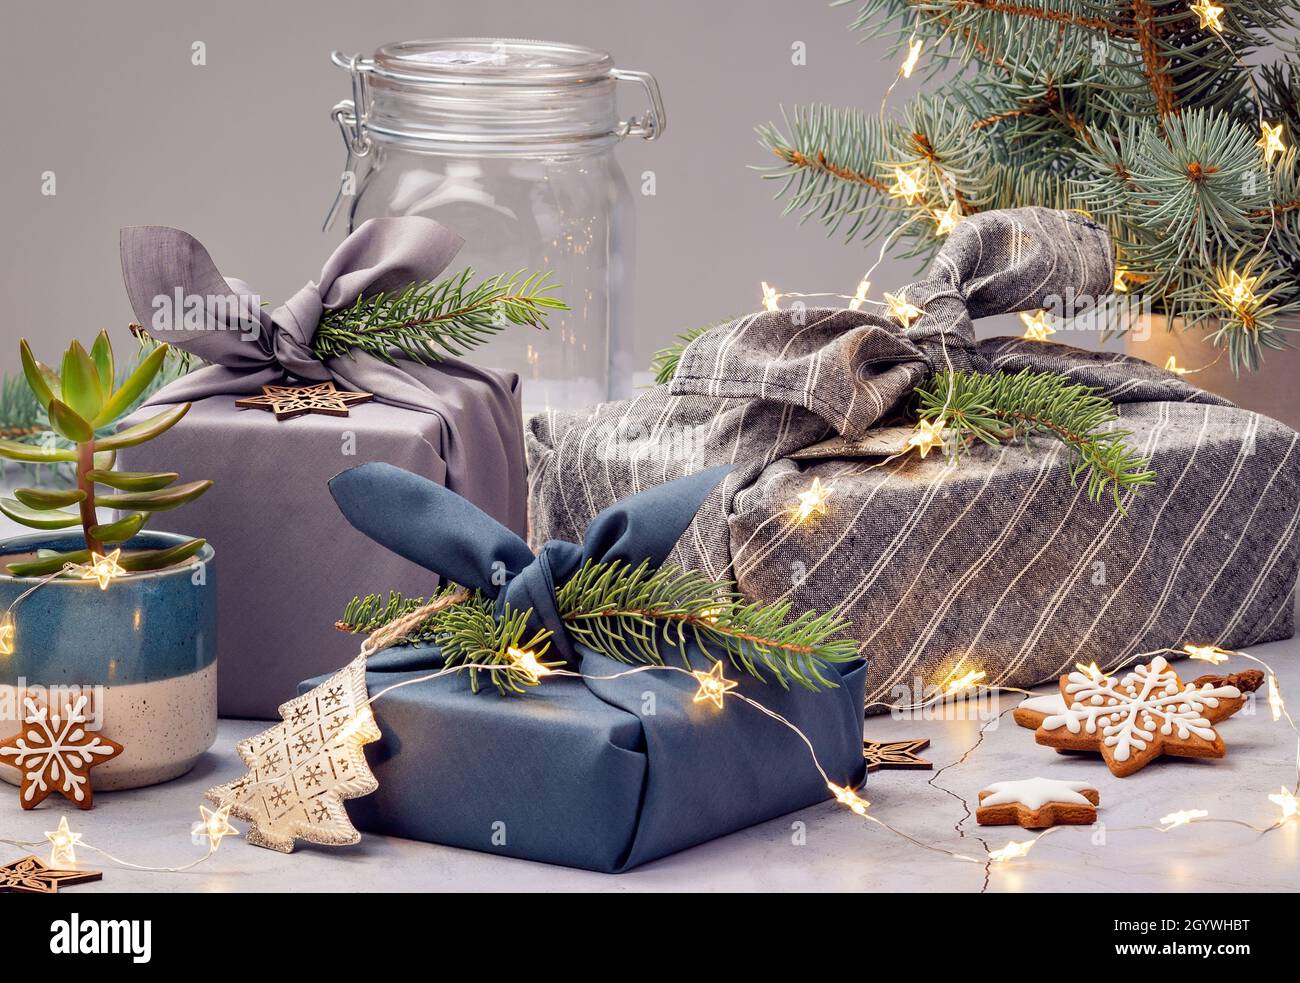 Weihnachtsgeschenke im traditionellen japanischen furoshiki-Stil  Stockfotografie - Alamy